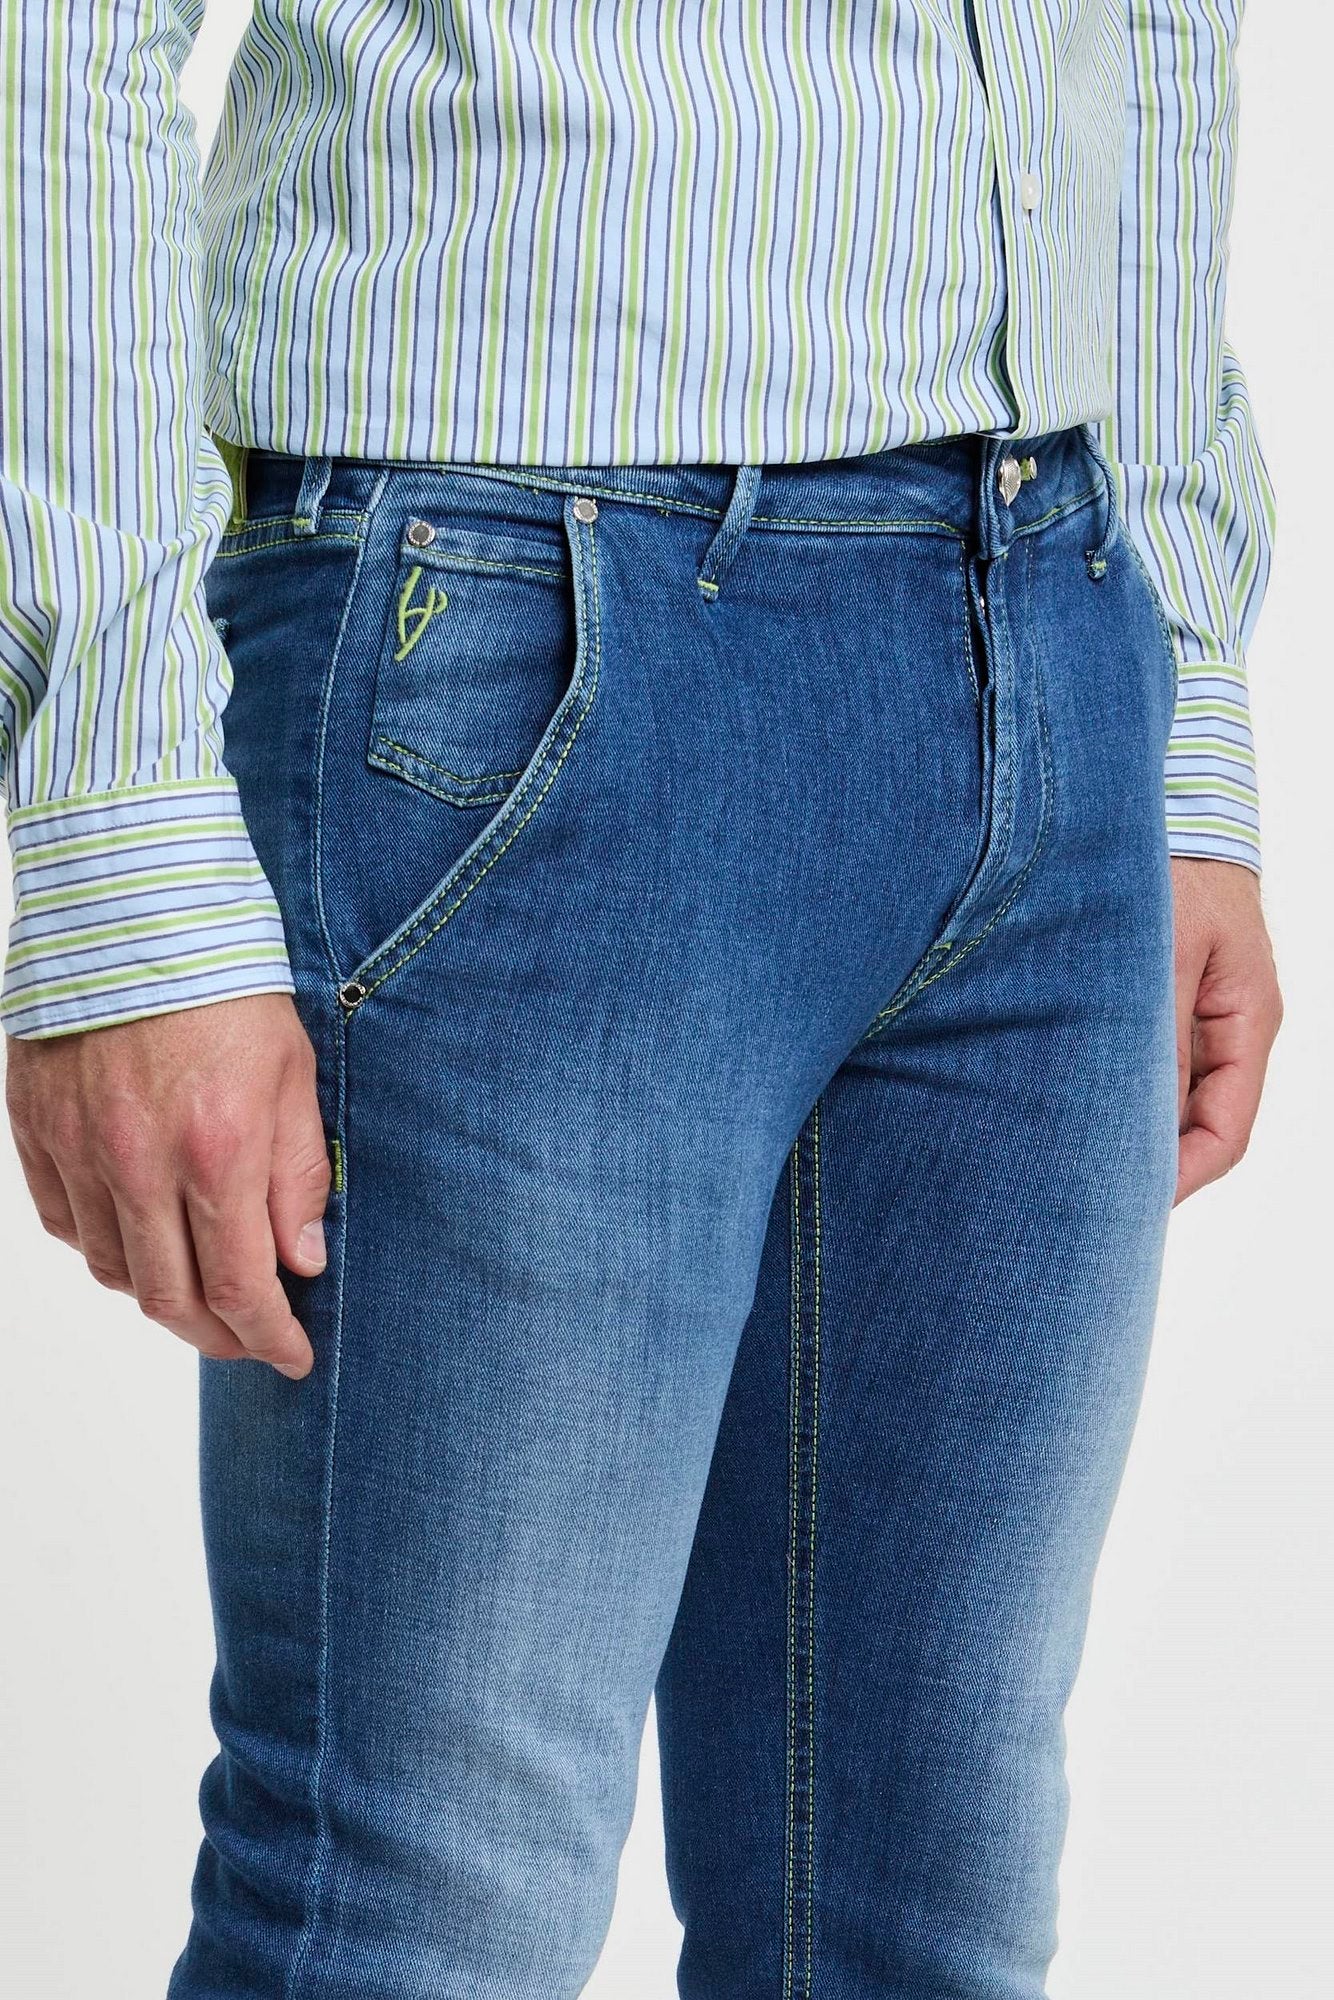 Handpicked Jeans Parma aus Denim-Baumwolle-4